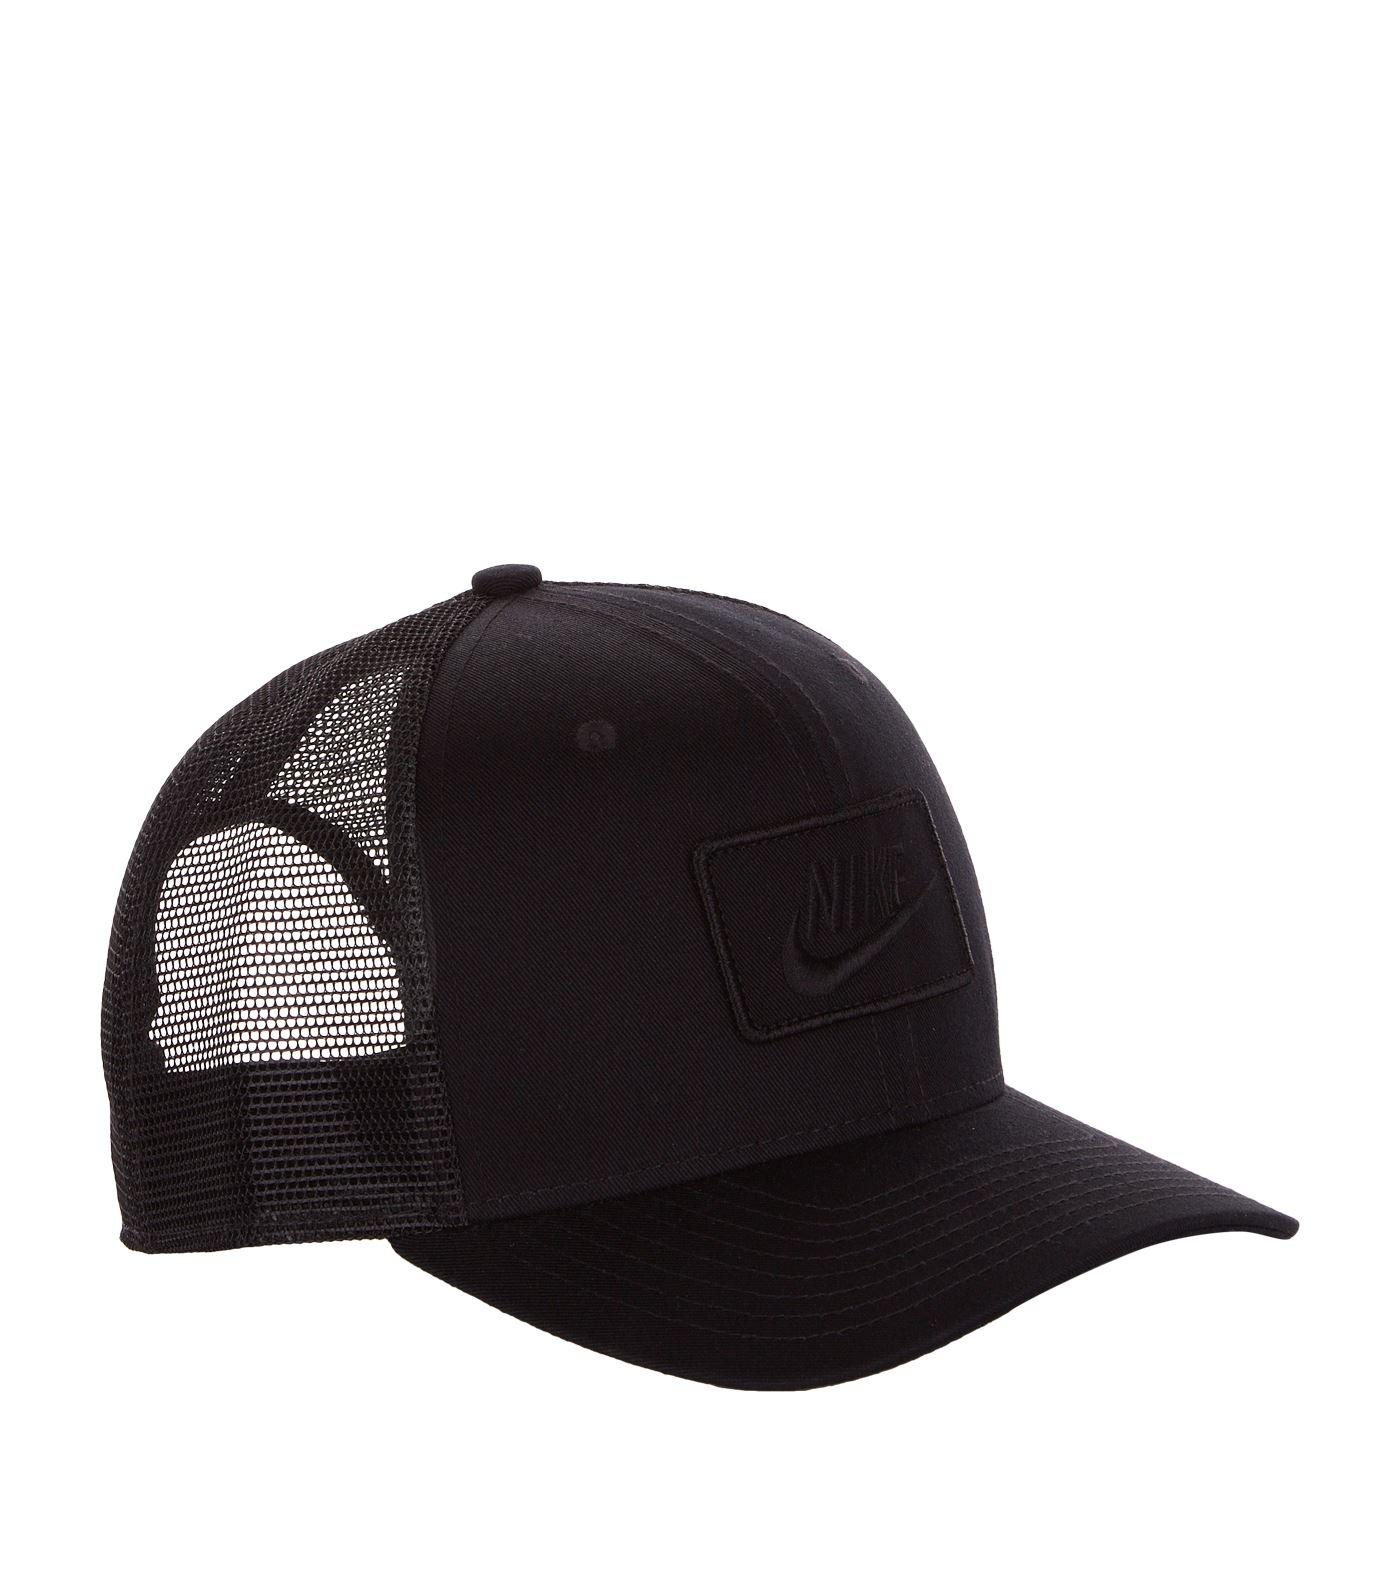 Nike Clc99 Trucker Hat in Black for Men - Lyst